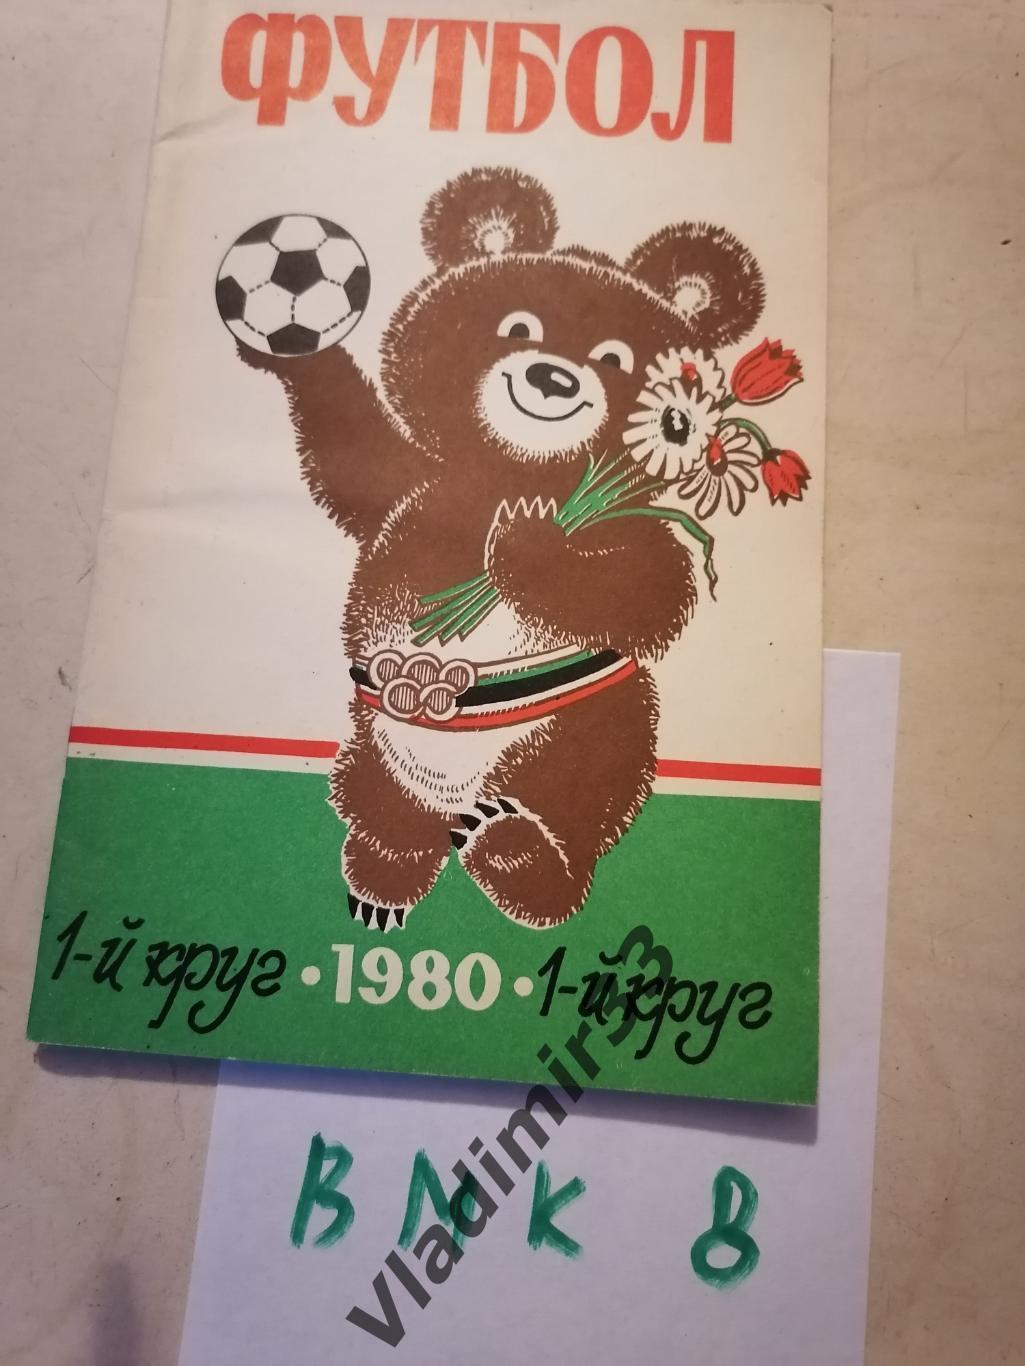 Ростов-на-Дону 1980 1ый круг Календарь